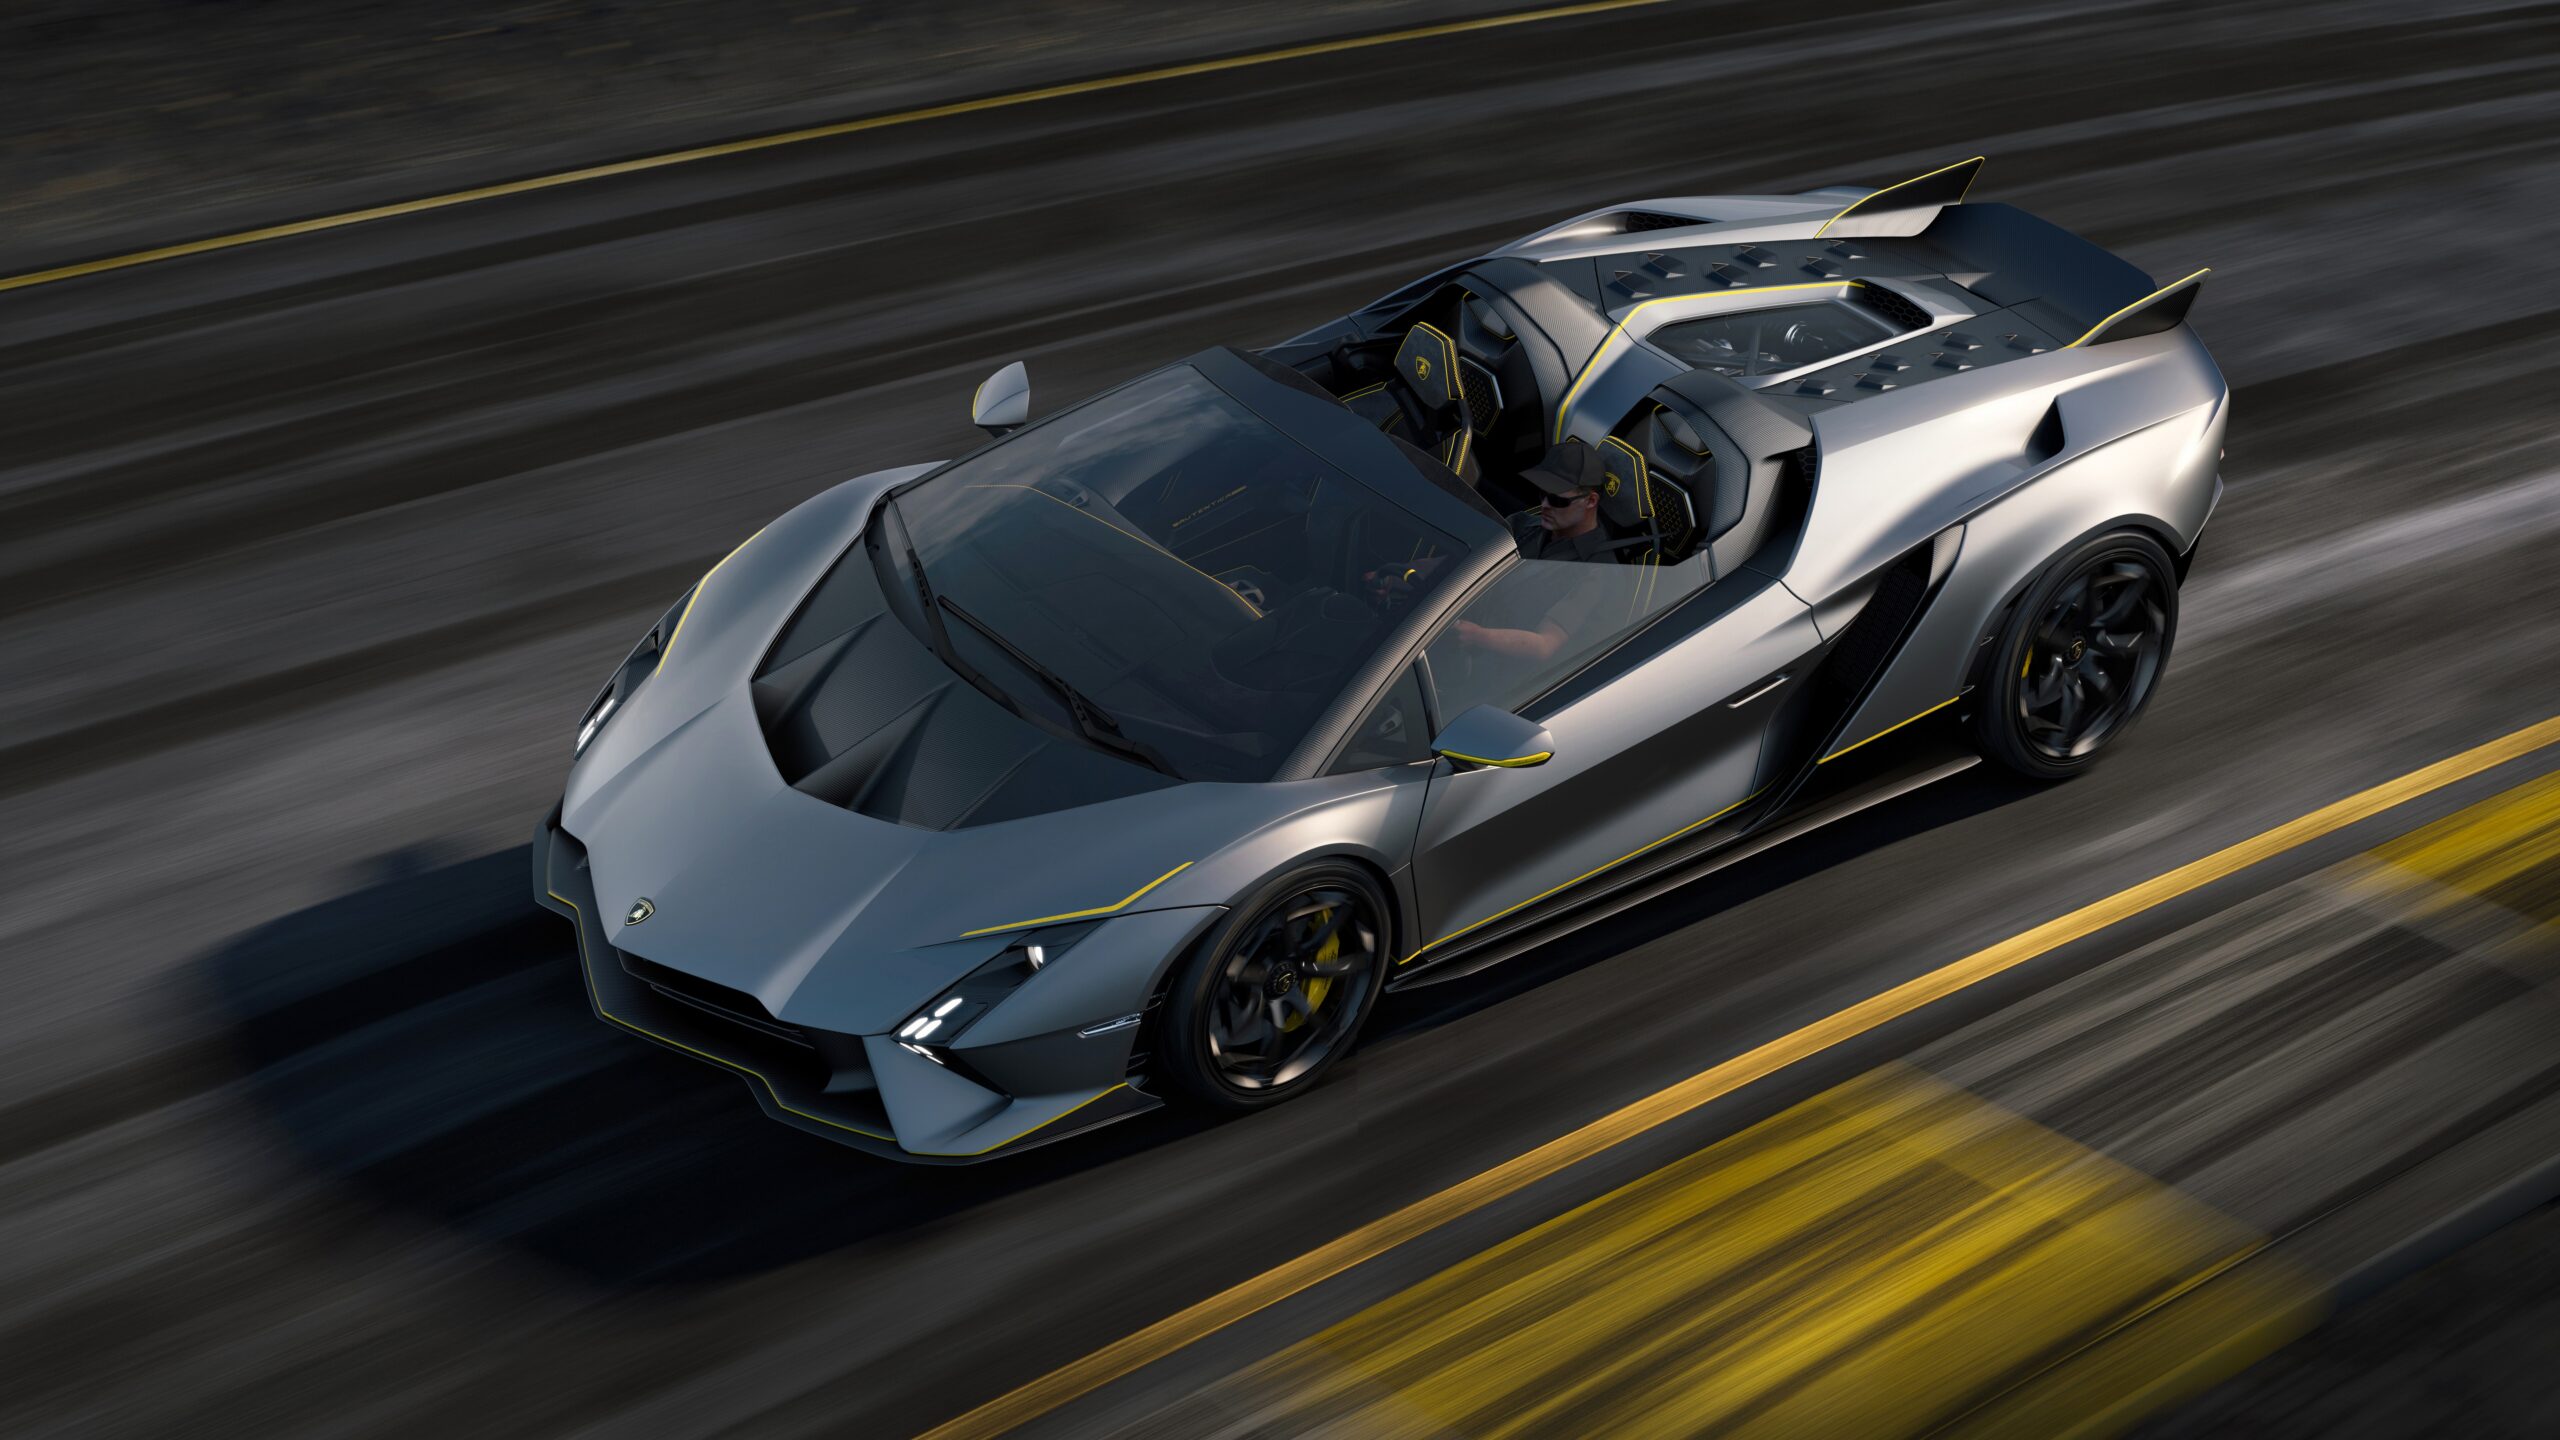 Lamborghini rinde homenaje a su célebre V12 de aspiración natural con el coupé Invencible y el roadster Autentica